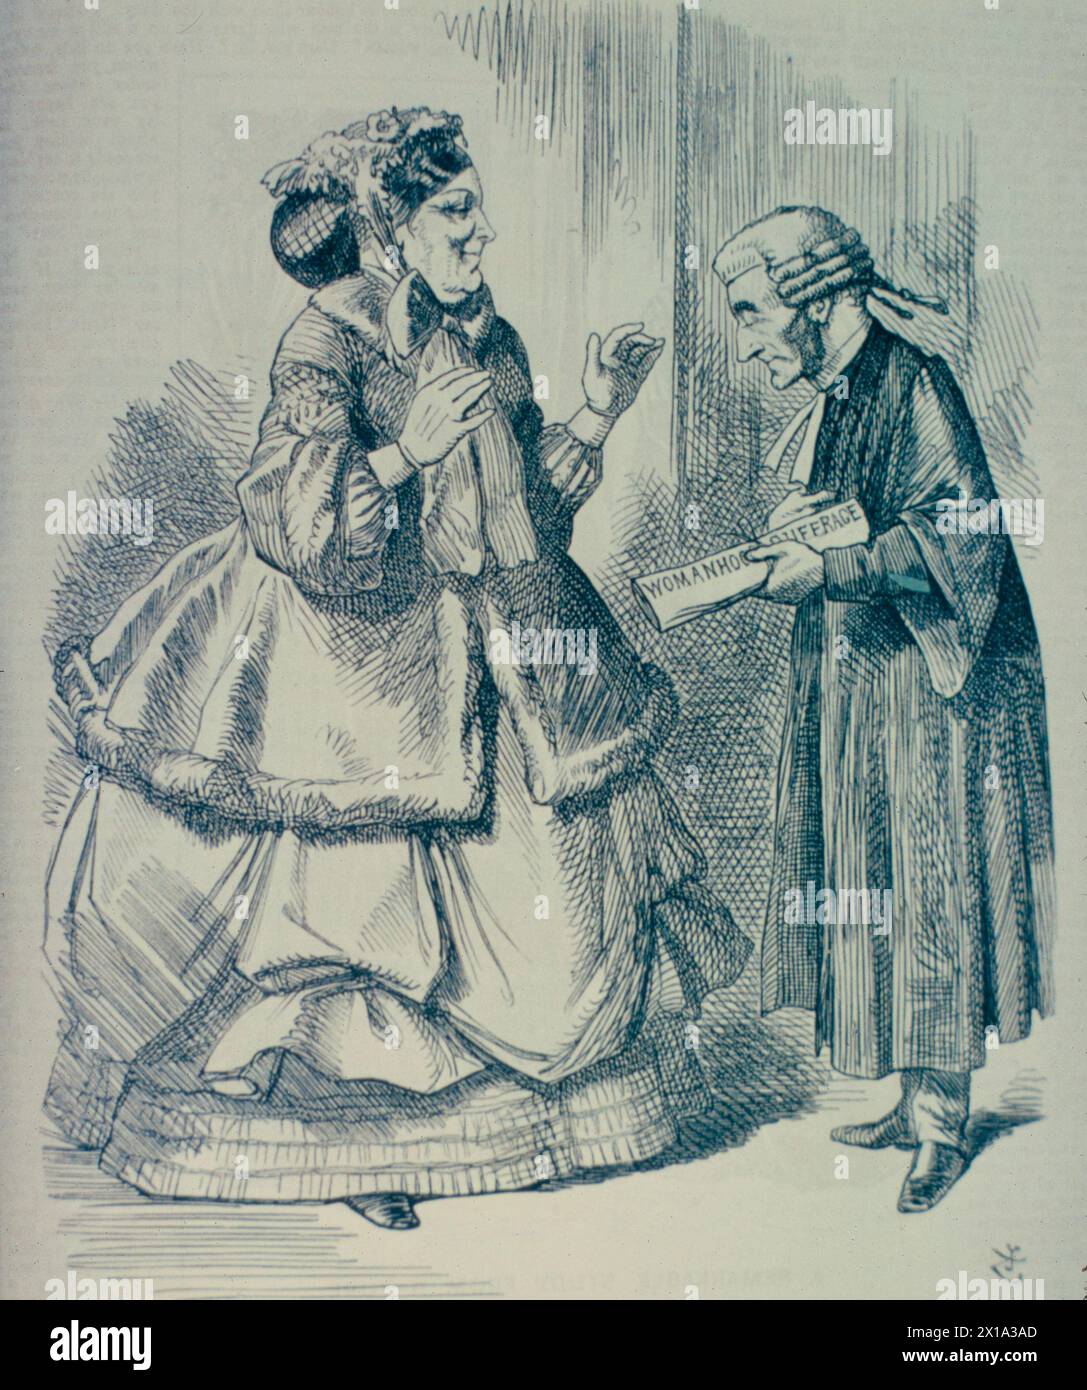 The Ladies' Advocate, caricature ridiculisant la défense des droits des femmes de John Stuart Mill, Angleterre 1867 Banque D'Images